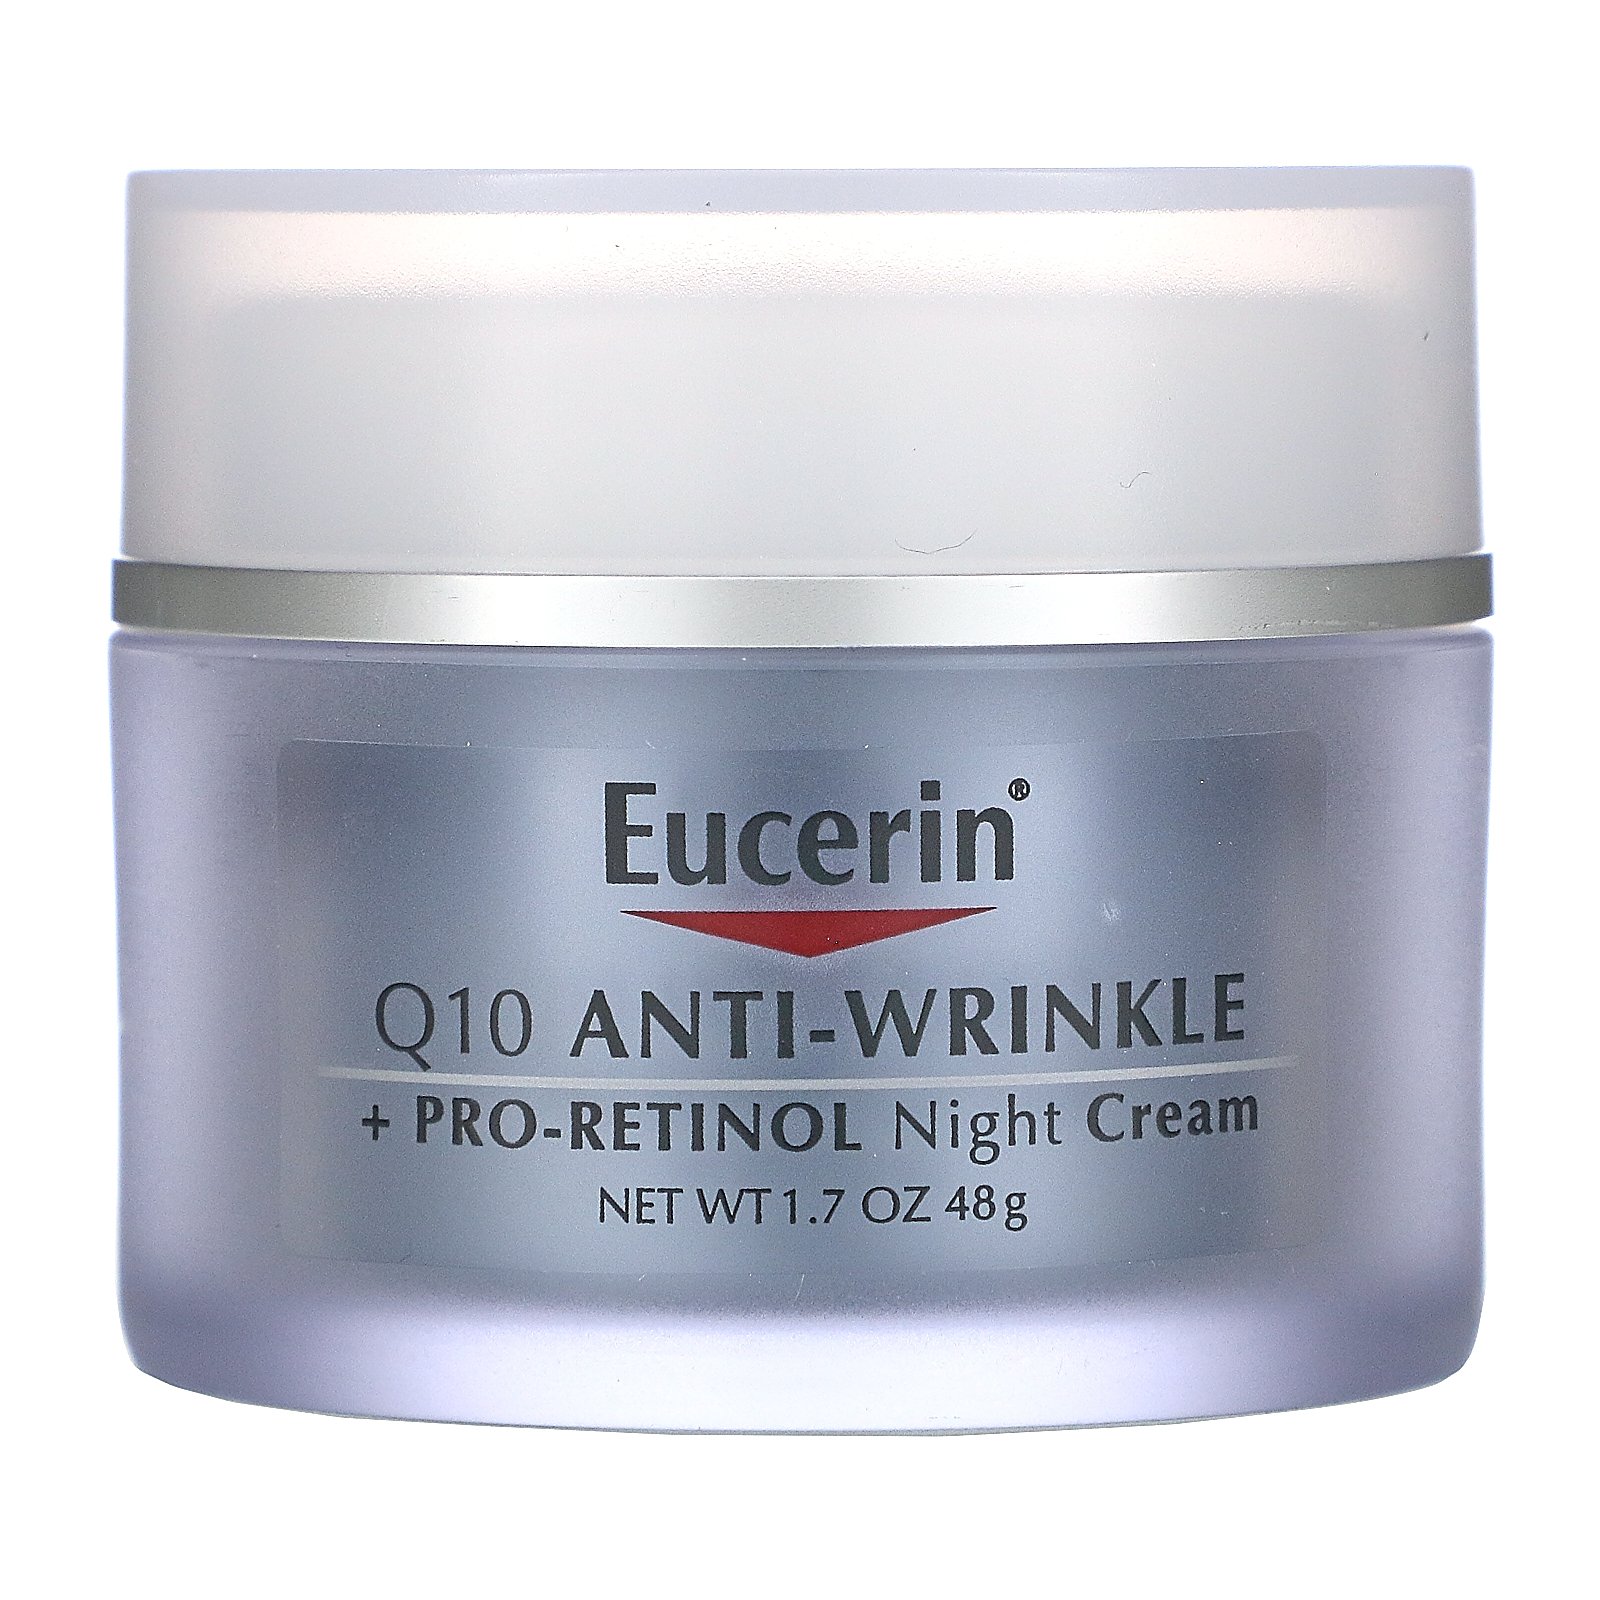 eucerin anti wrinkle night cream)